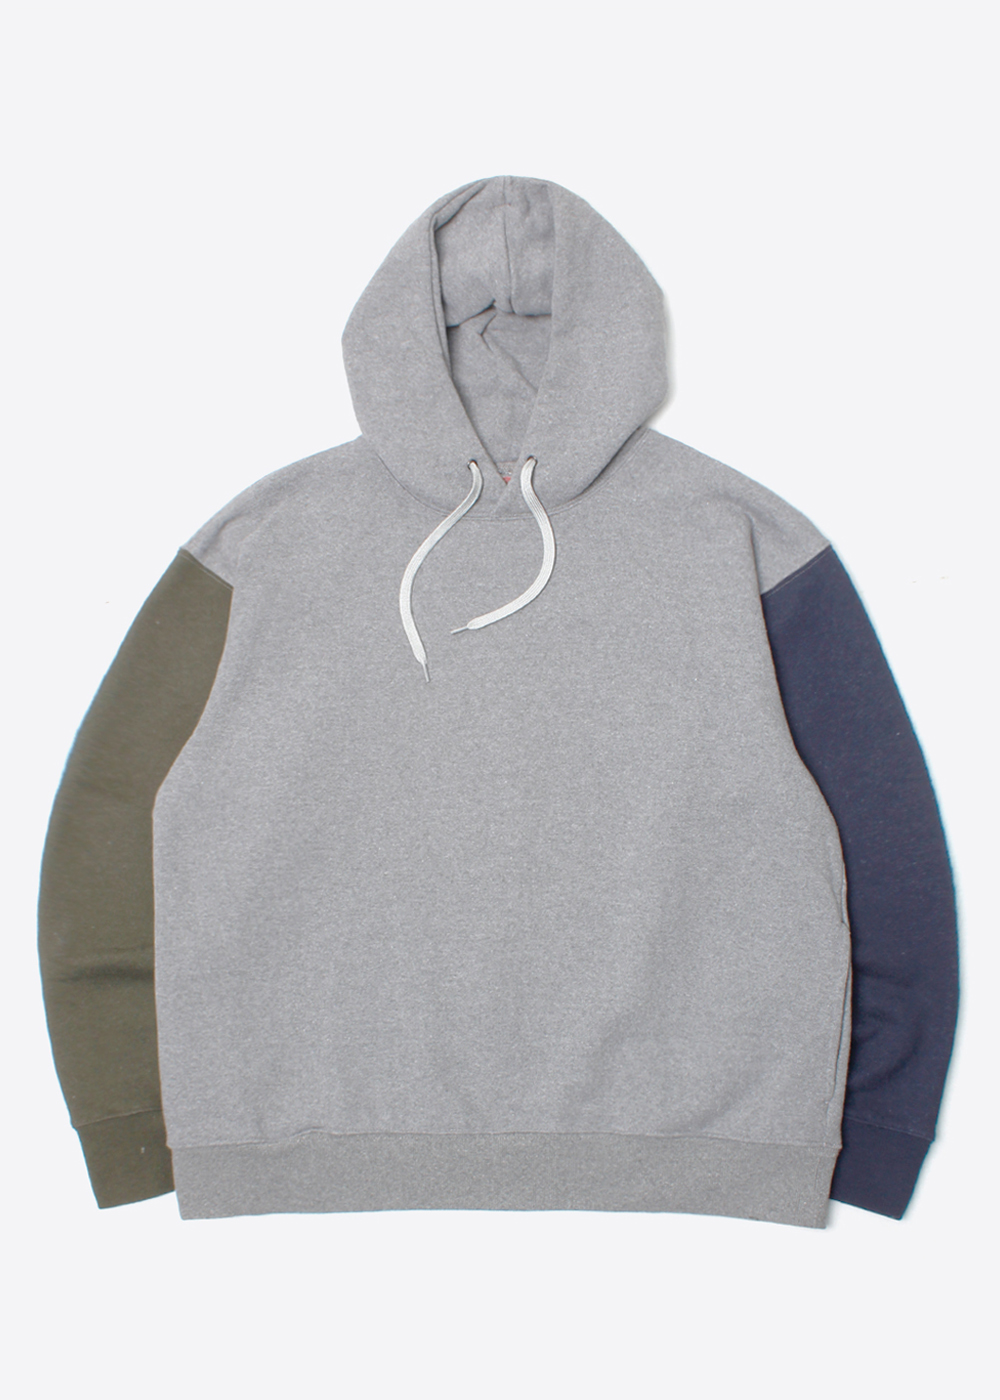 NIKO AND‘over fit’ multi color hoodie sweatshirt